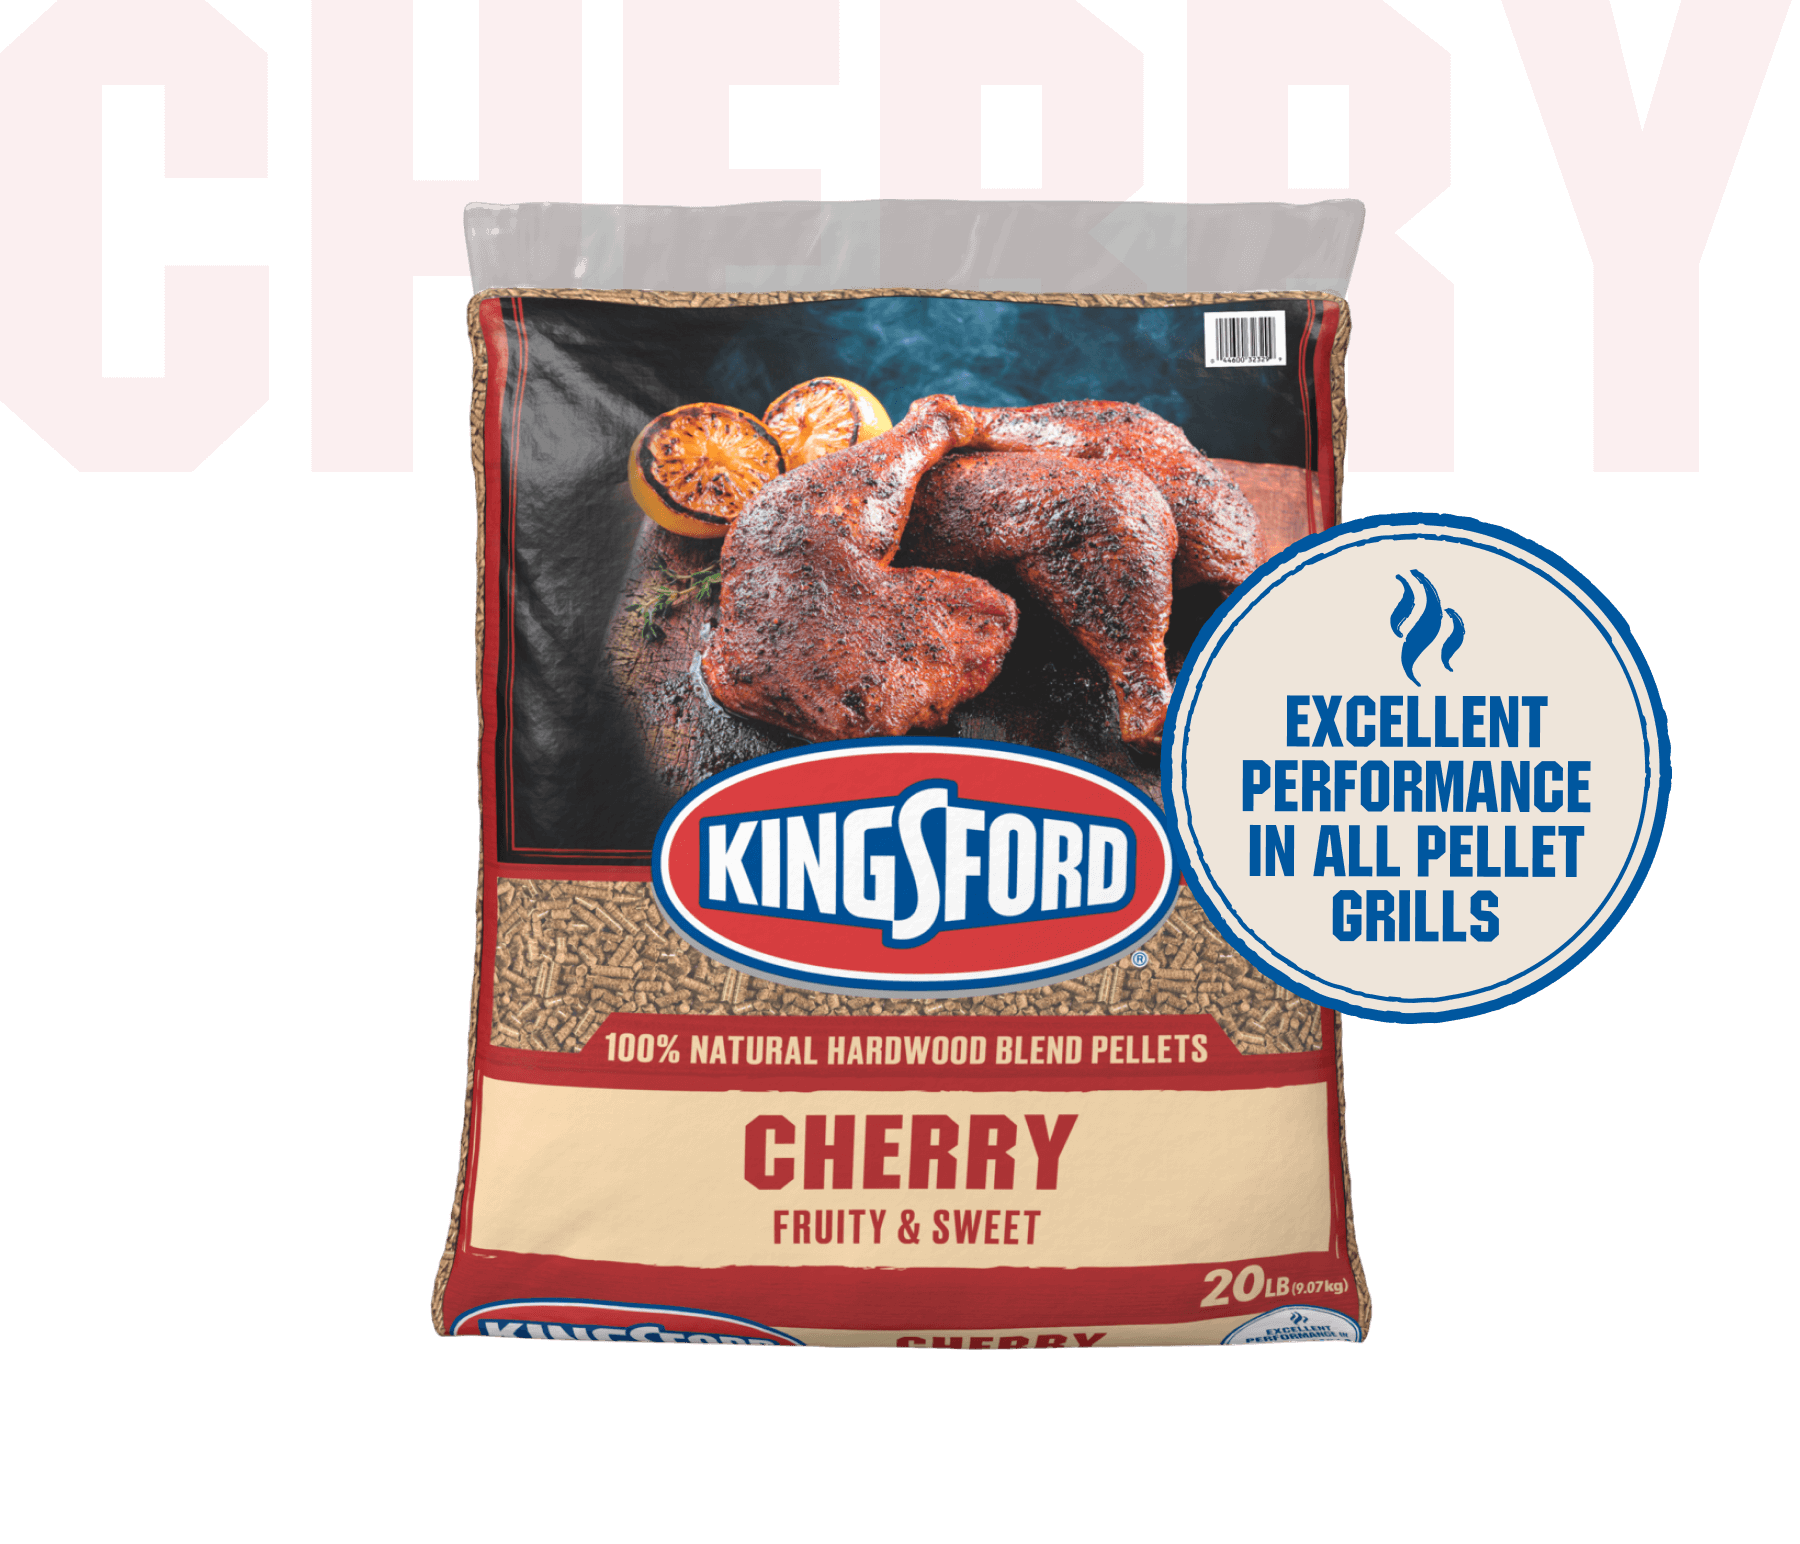 Kingsford® 100% Natural Hardwood Blend Pellets, Cherry, 20 lb